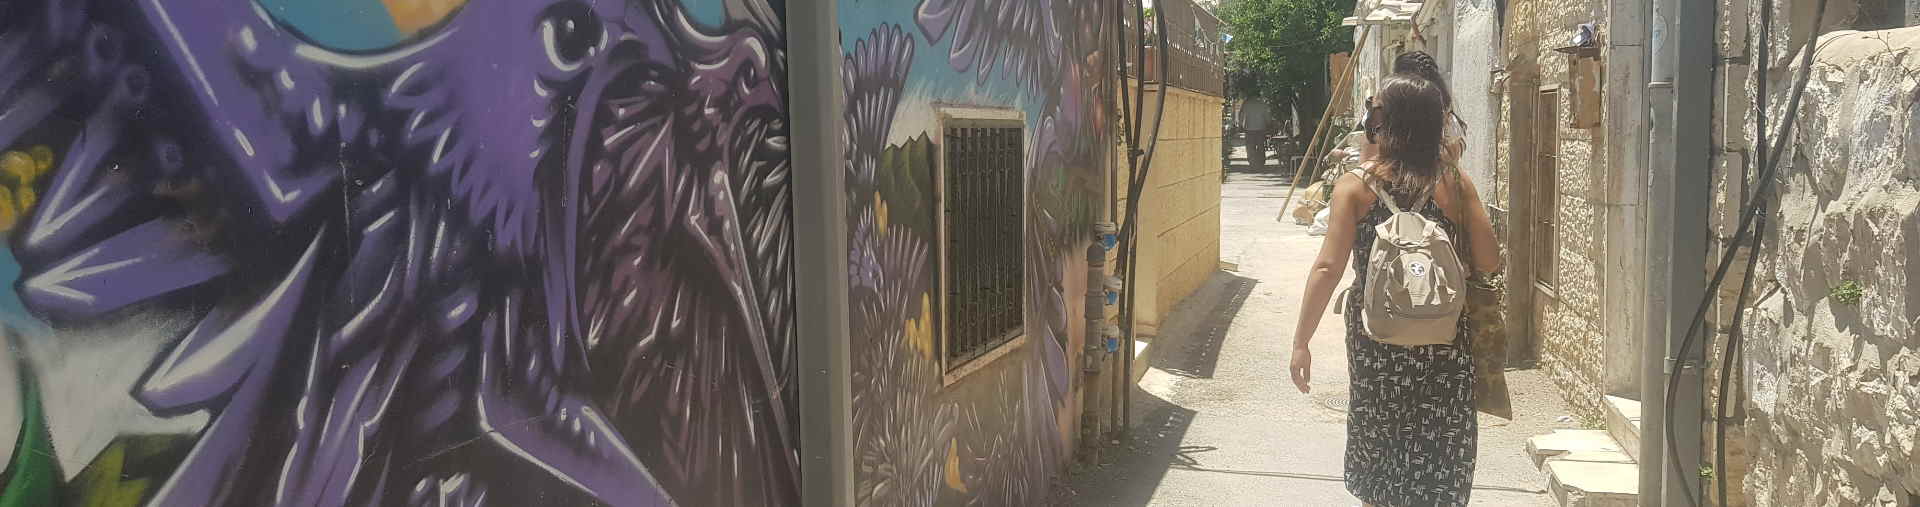 הדרכה על אמנות רחוב בירושלים